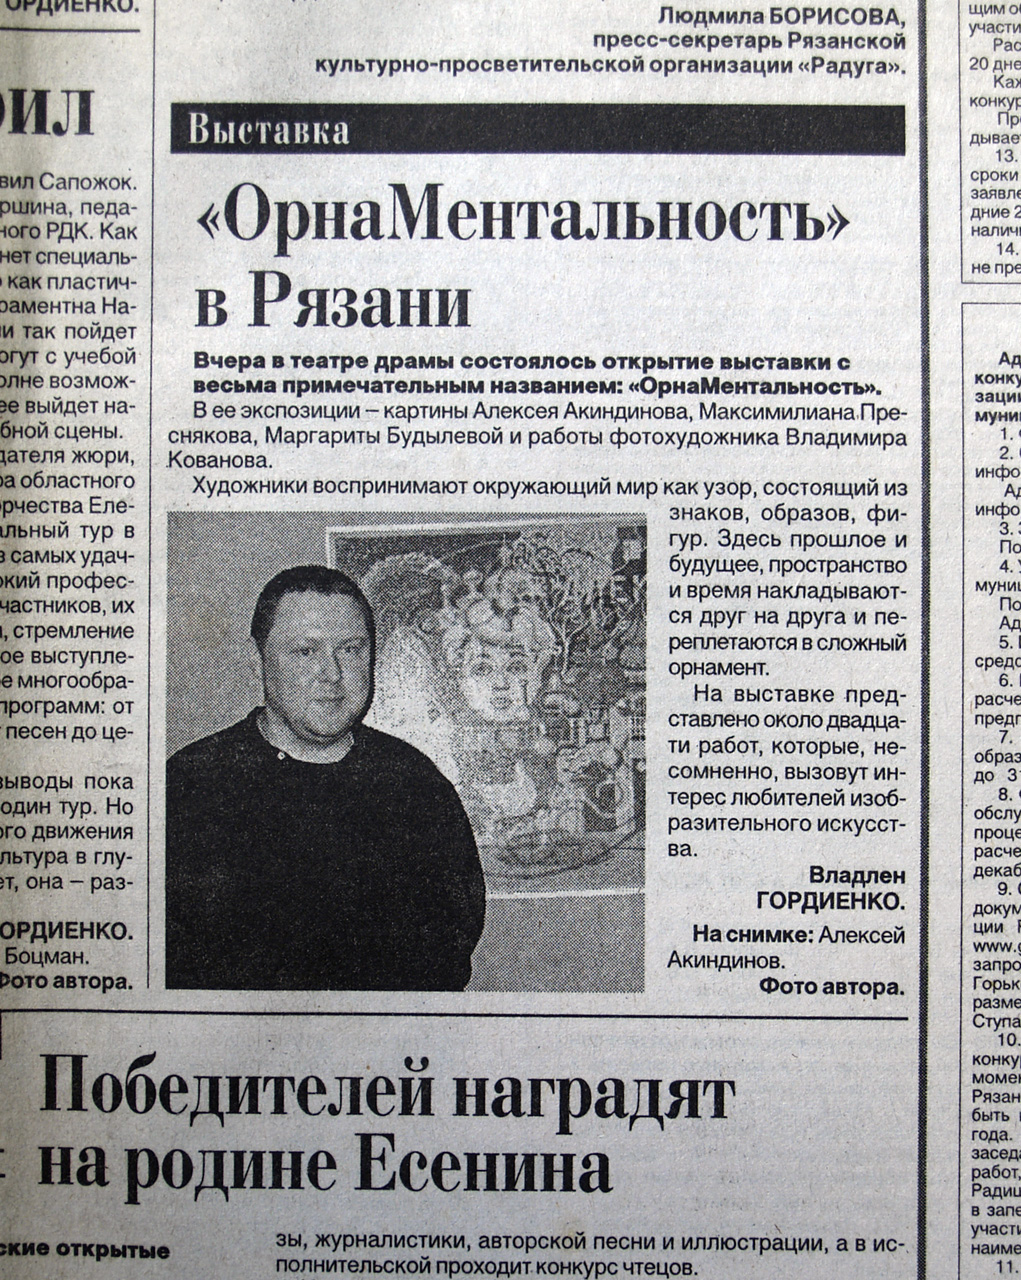 ryazanskiye vedomosti 22.11.2006 1